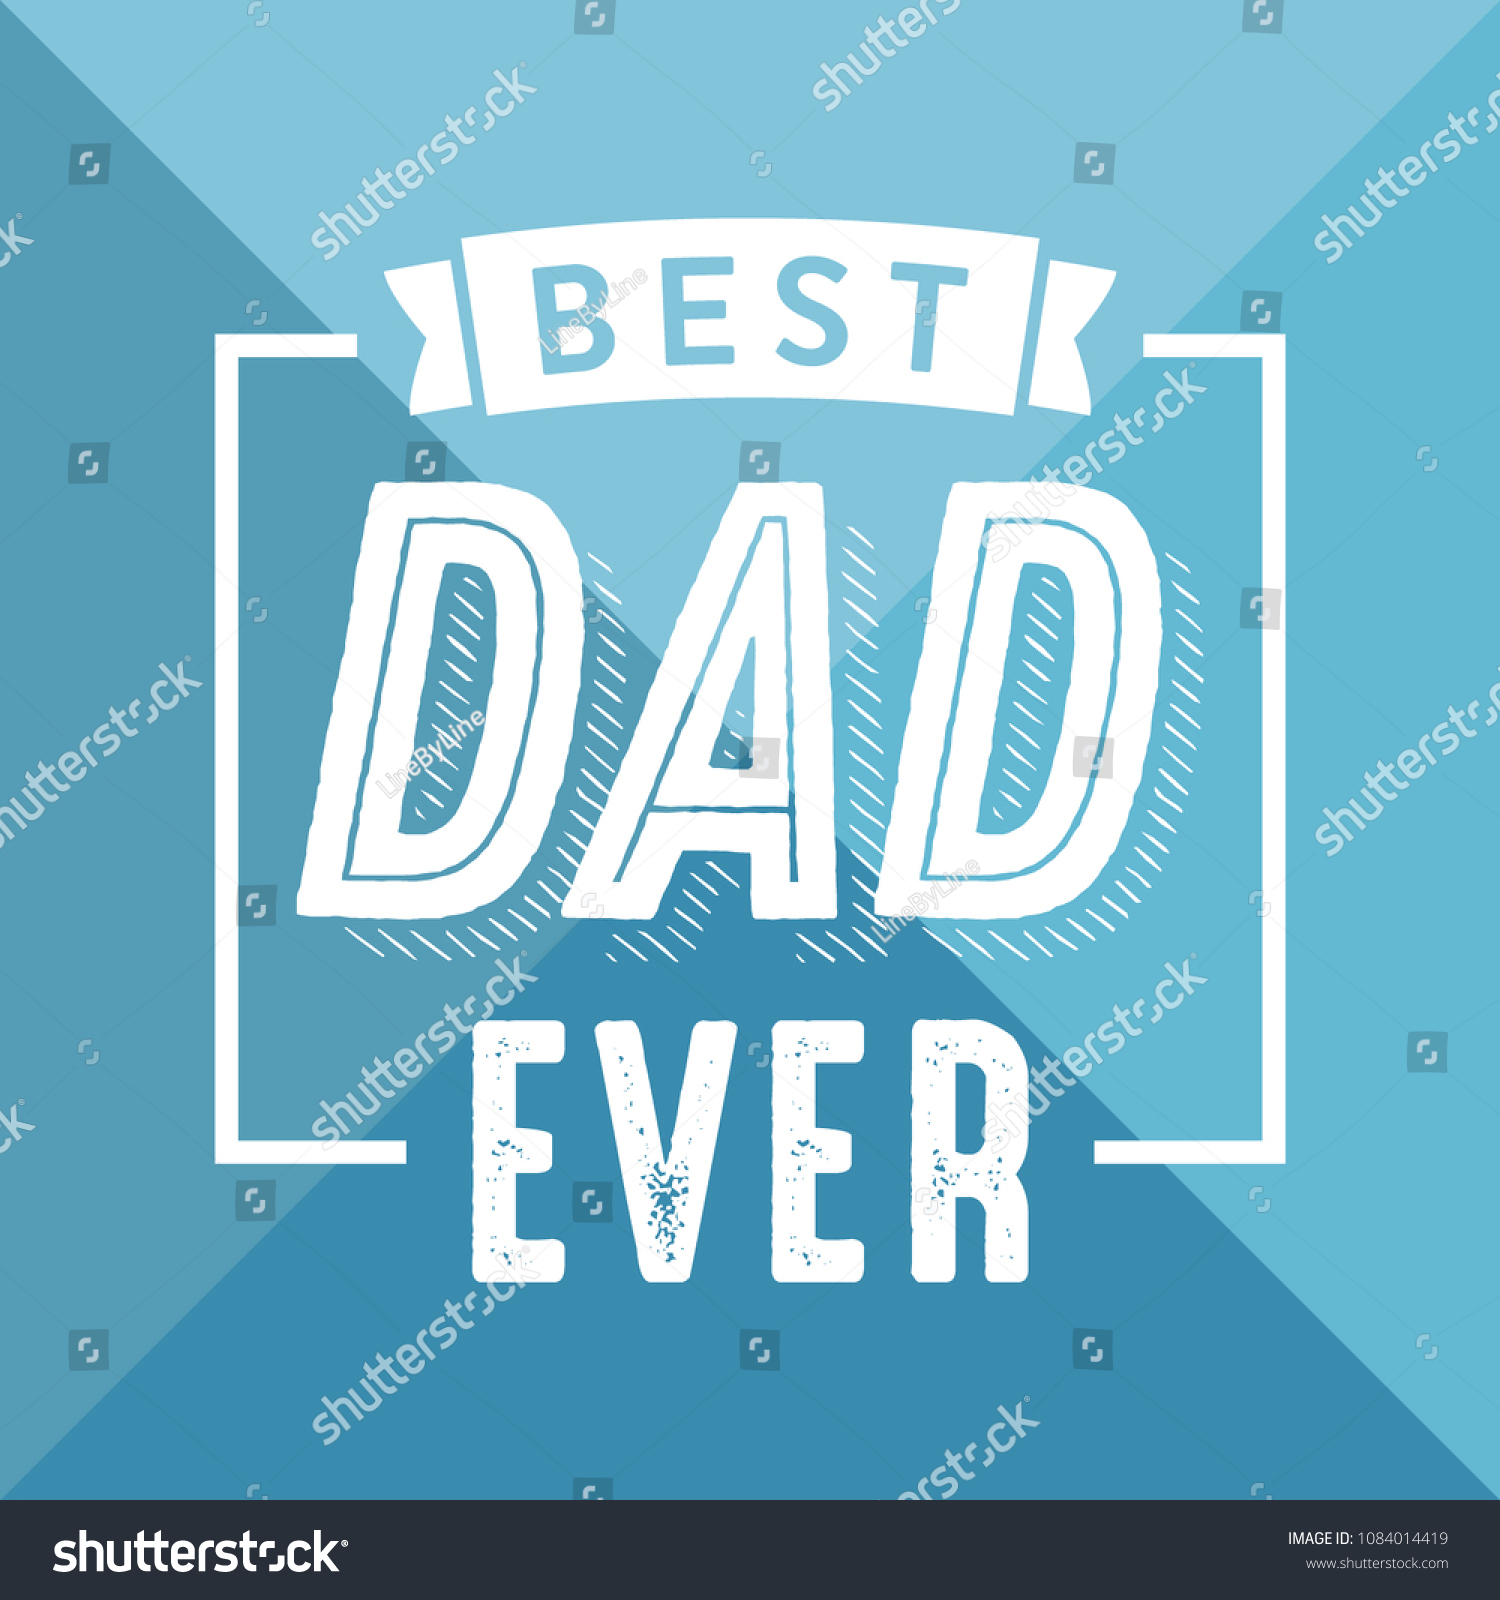 Best Dad Ever Appreciation Vector Text Stock Vector (Royalty Free ...